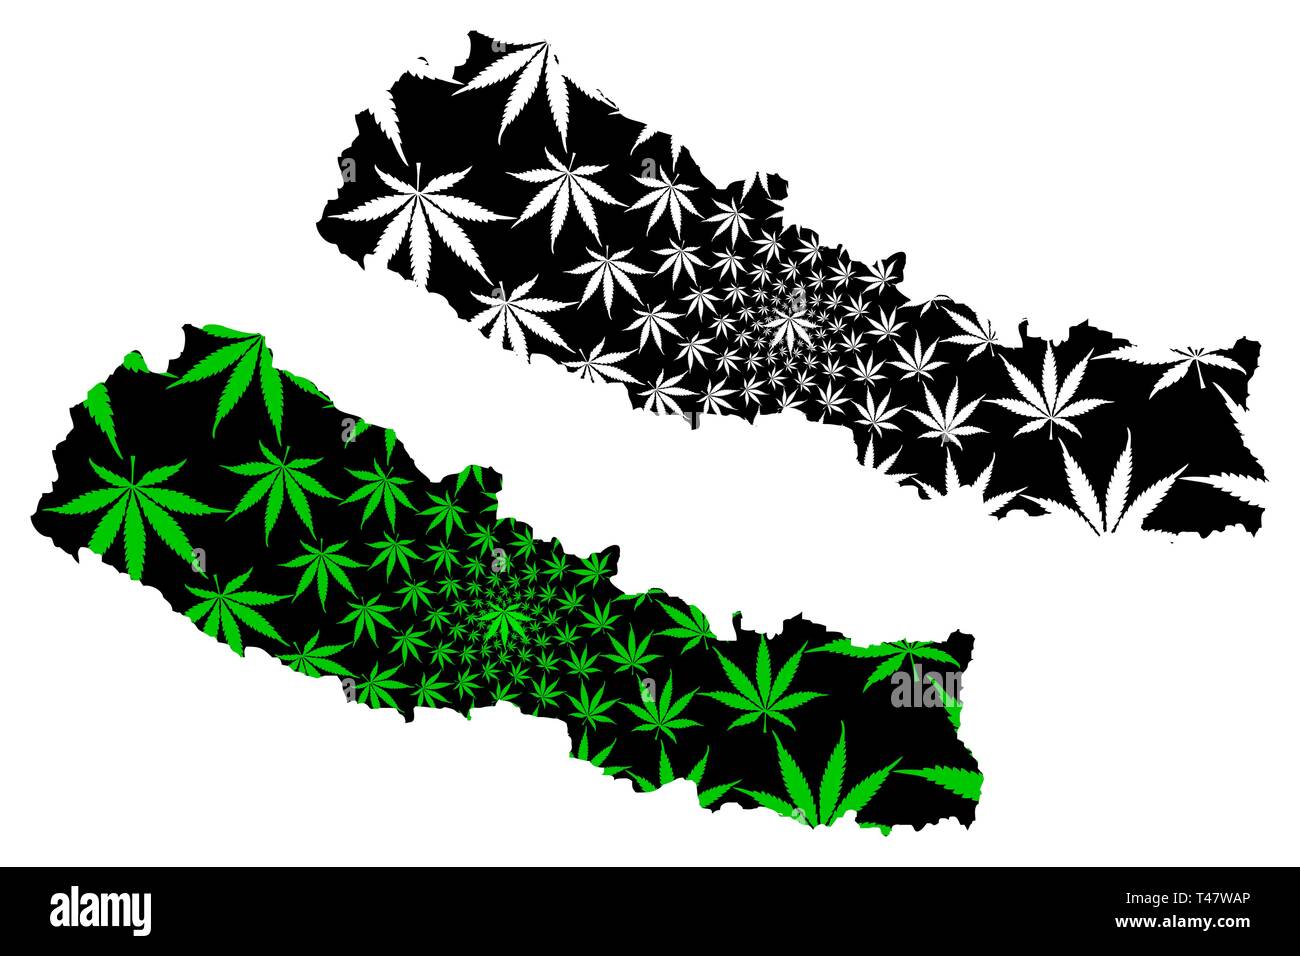 Népal - carte feuille de cannabis est vert et noir, République fédérale démocratique du Népal carte de marijuana, THC) feuillage, Illustration de Vecteur